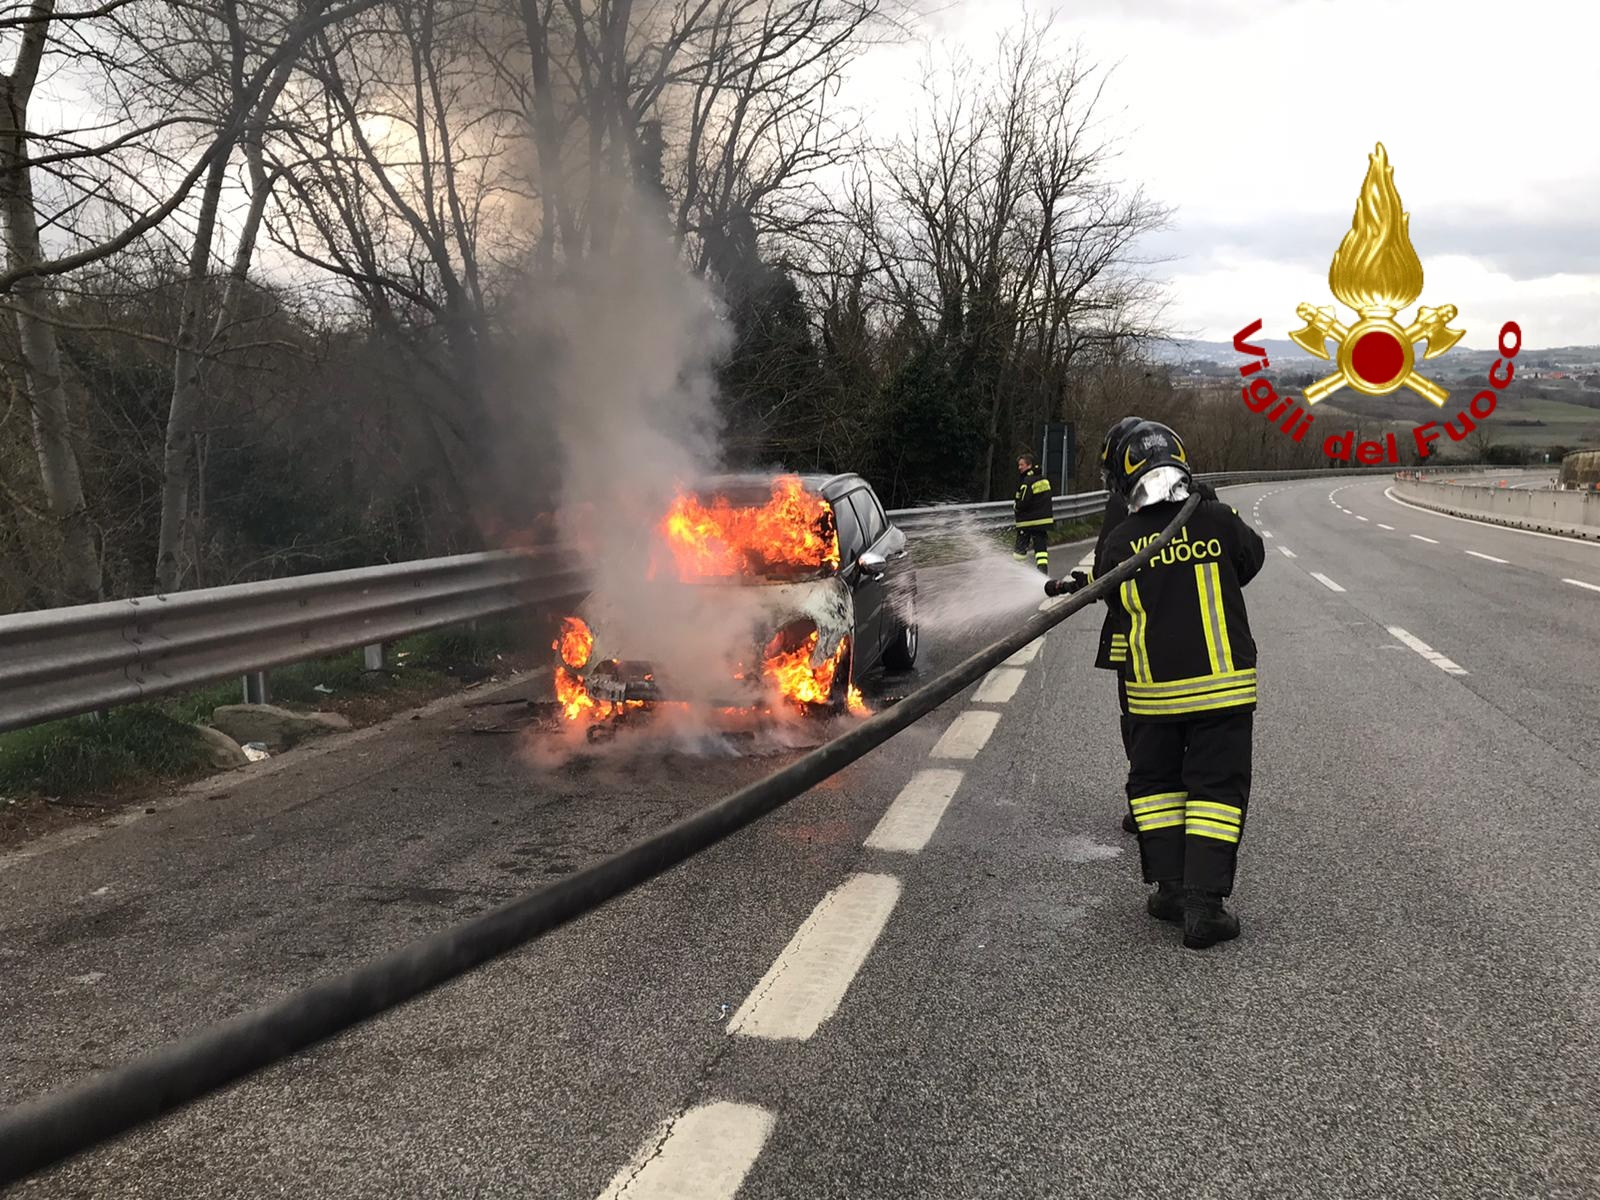 Castel del Lago| Auto in fiamme sull’A16, paura per i due ragazzi a bordo del veicolo